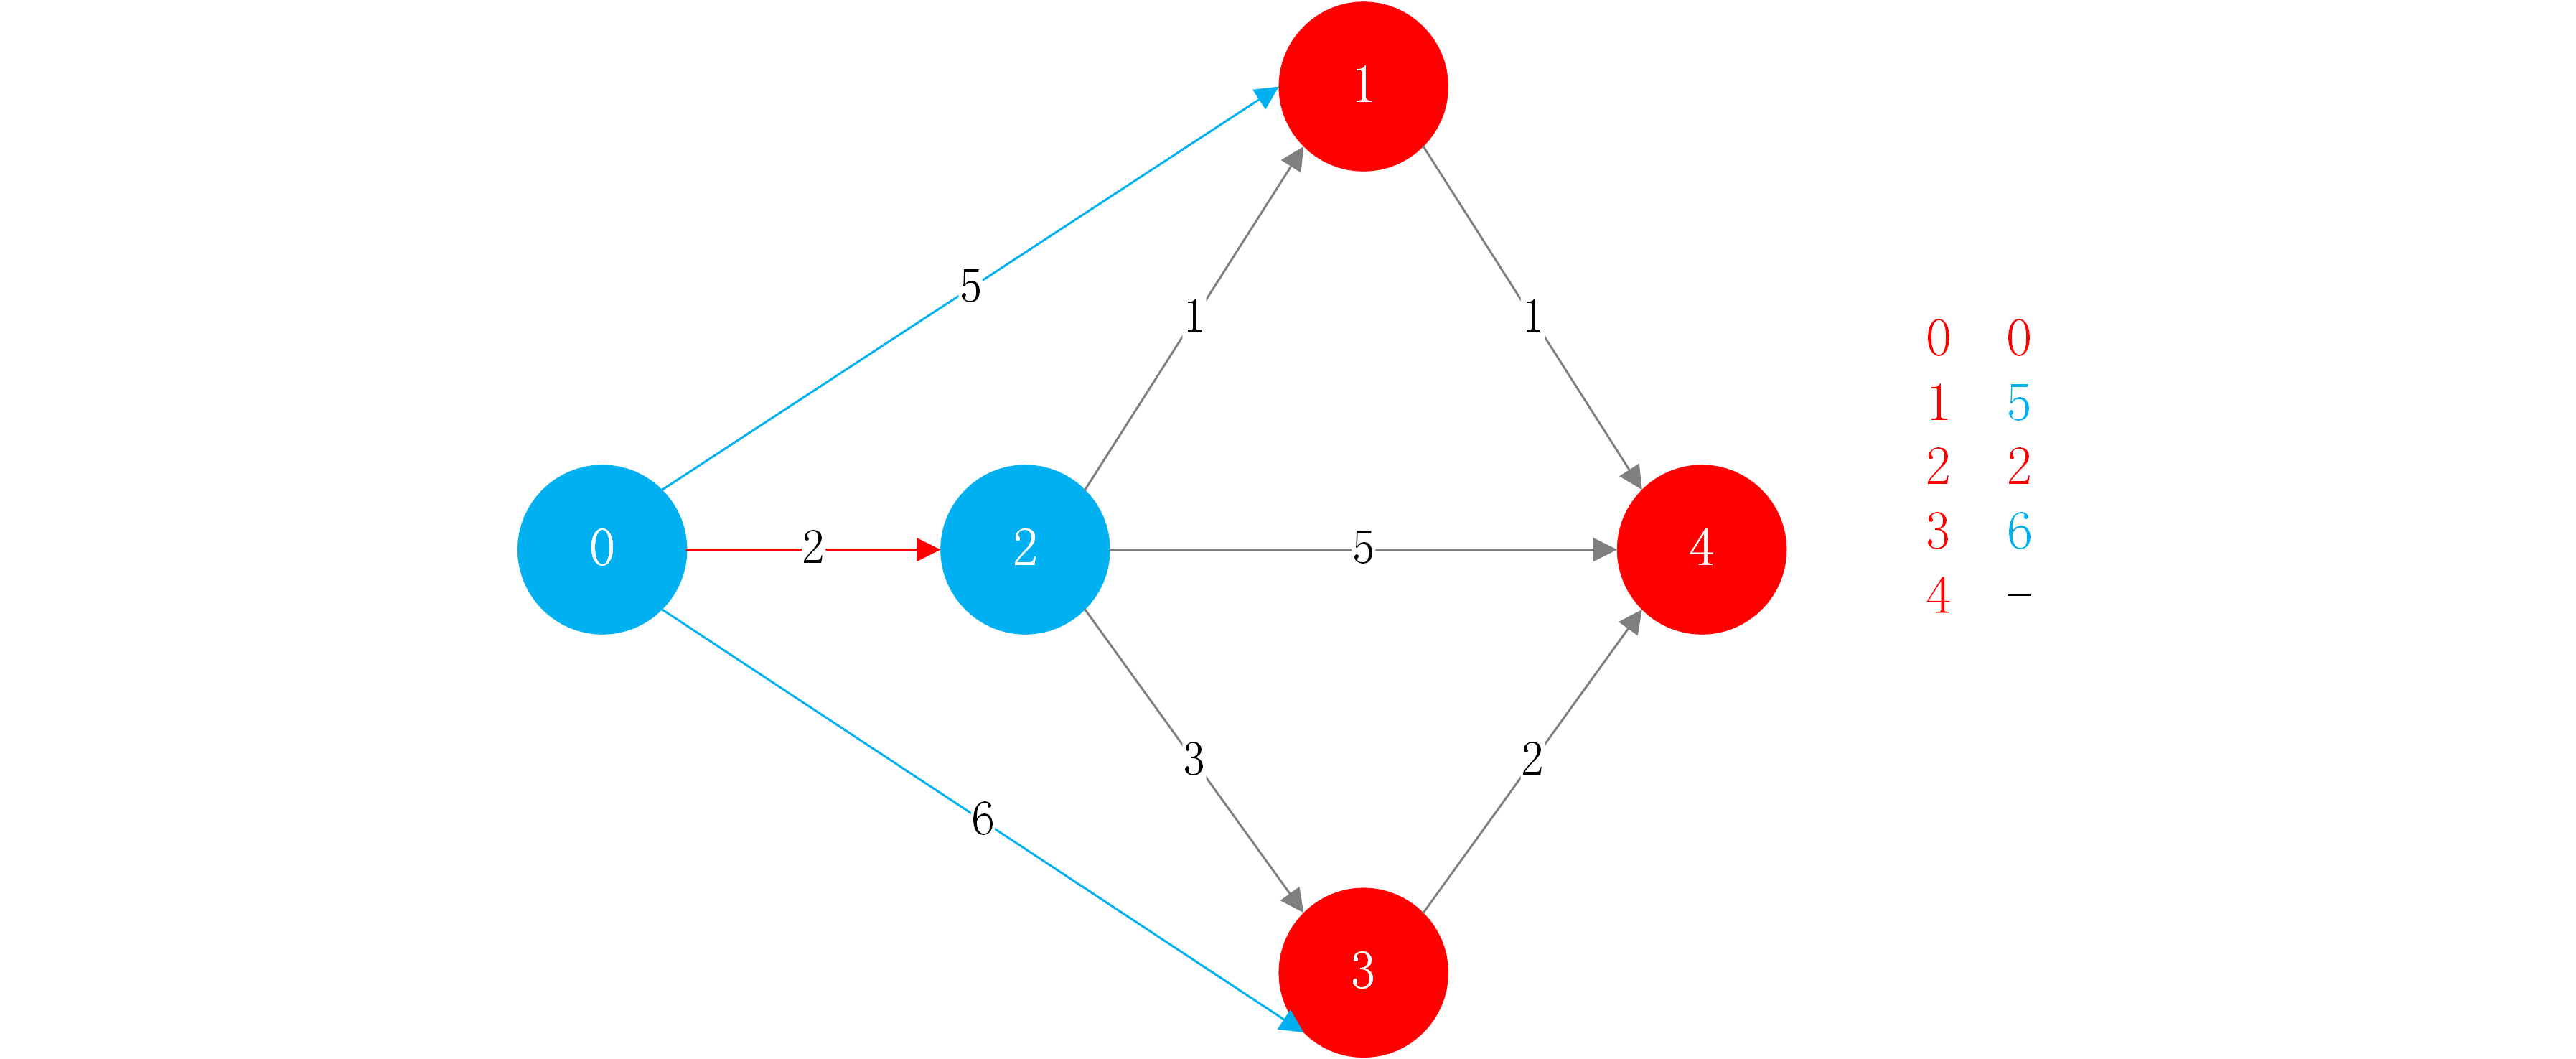 step1-2 找到相邻节点中能够以最小权值抵达的节点和其权值